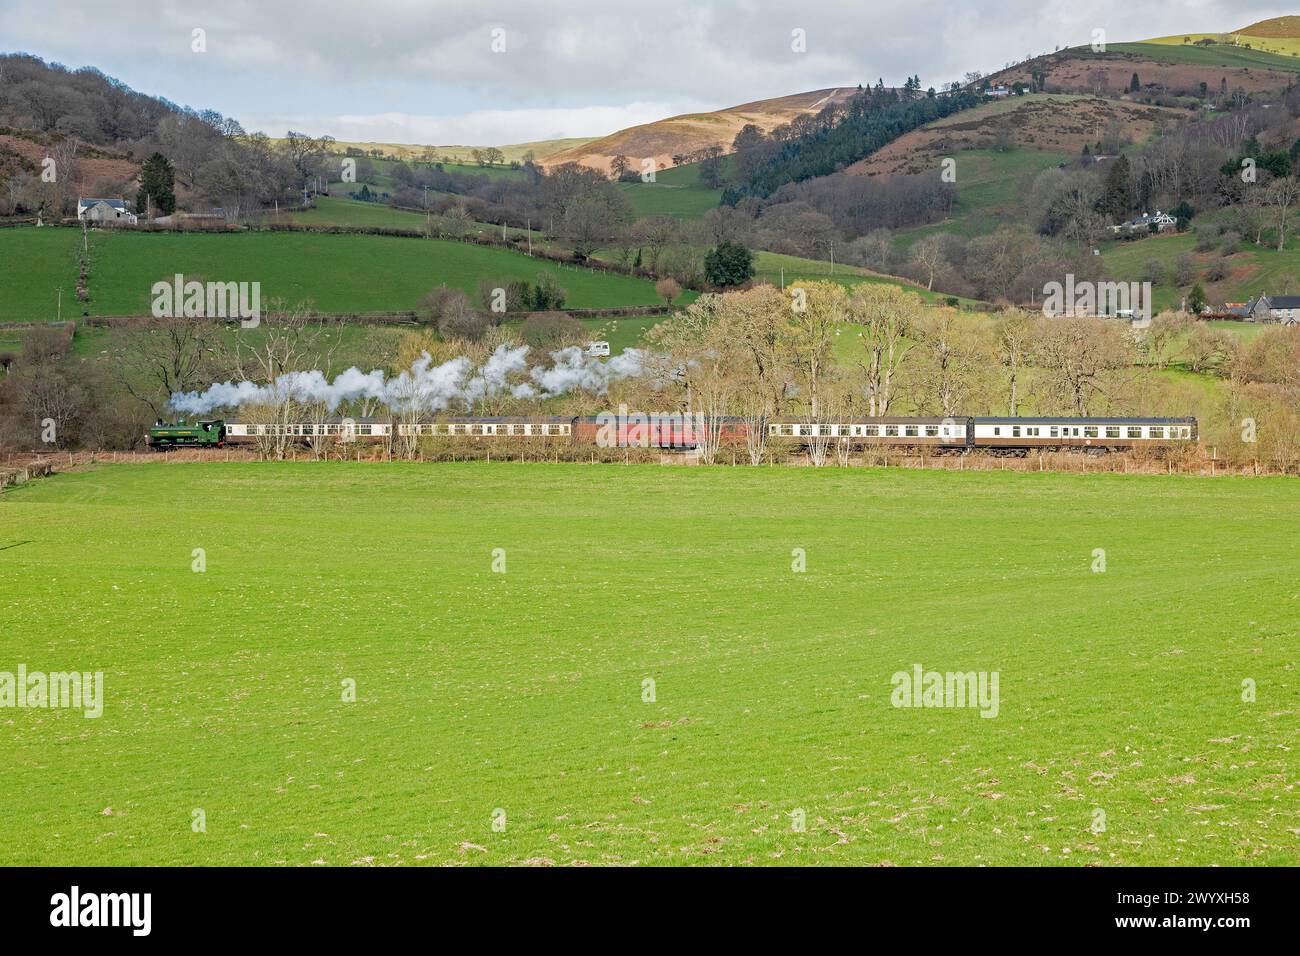 Train à vapeur Llangollen Railway près de Glyndyfrdwy, pays de Galles, Grande-Bretagne Banque D'Images